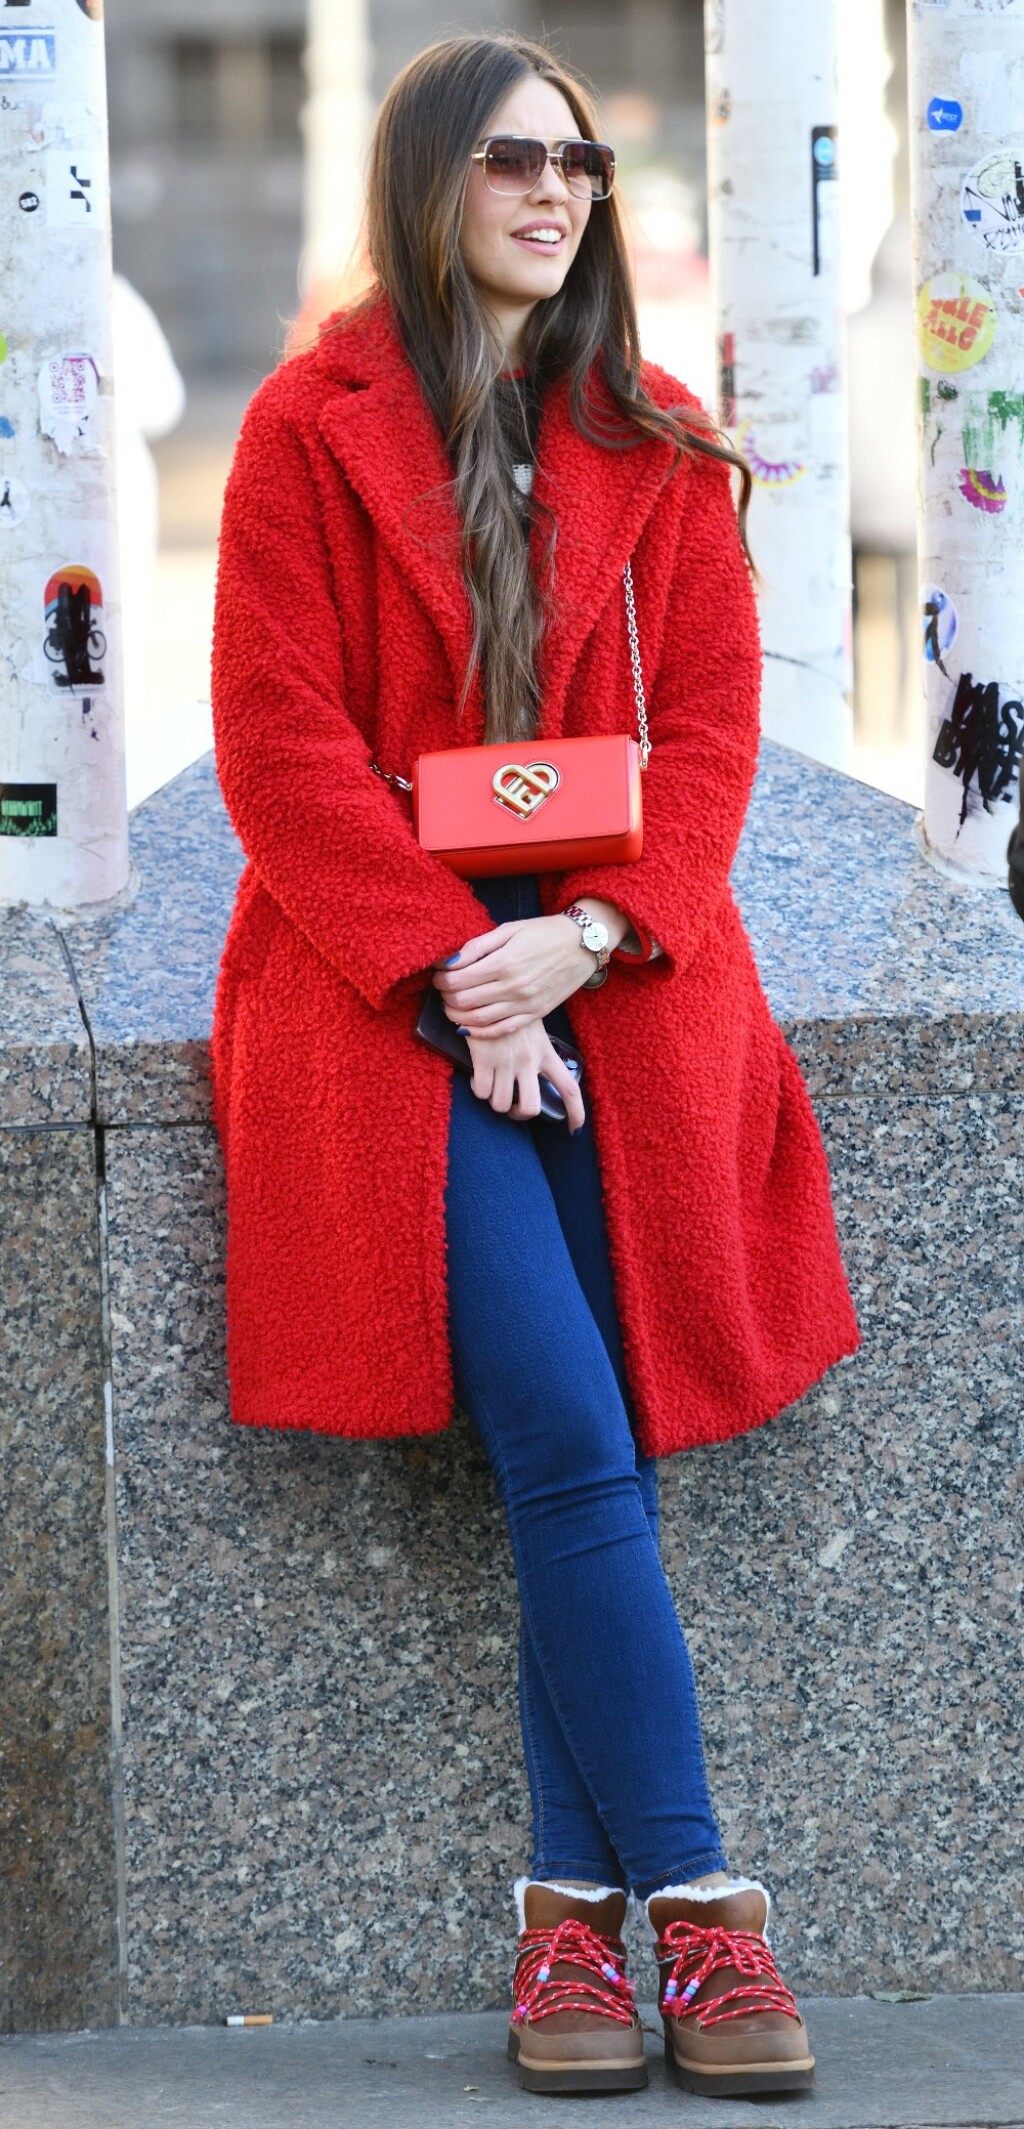 Crvena boja u street style izdanju sa zagrebačke špice